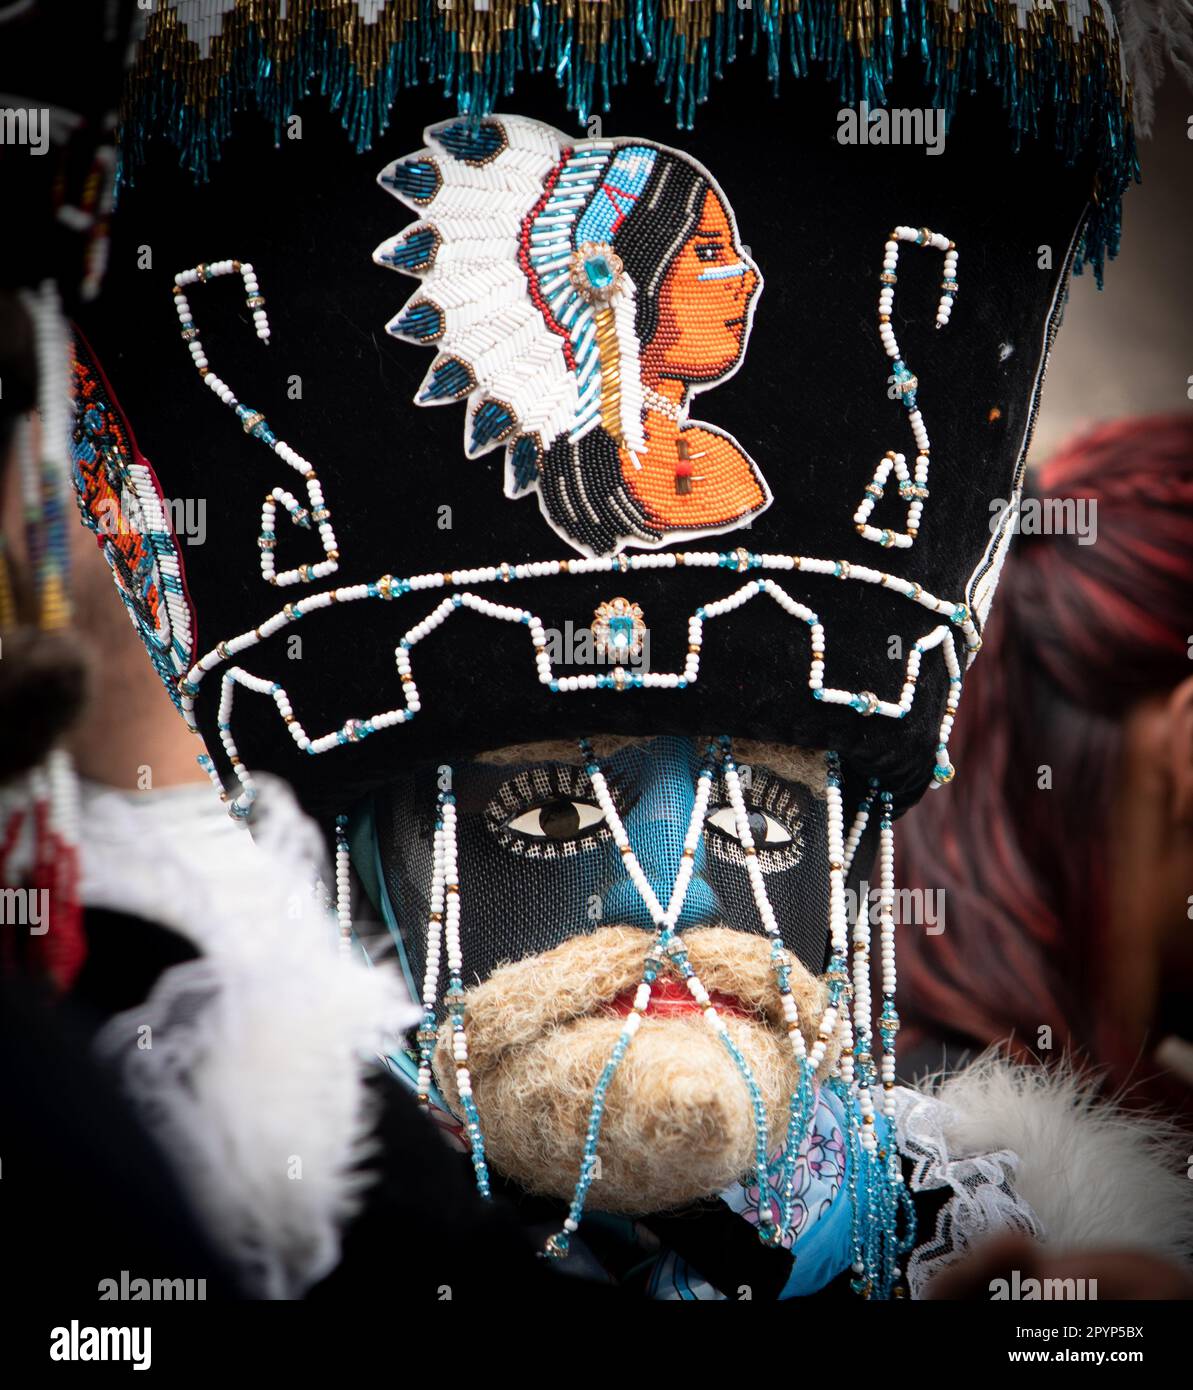 Chinelos sind ein traditioneller, bunt kostümierter Tänzer im Karneval, der im mexikanischen Staat Morelos in der Nähe von Tepoztlan, dem Staat Mexiko und Mexic beliebt ist Stockfoto